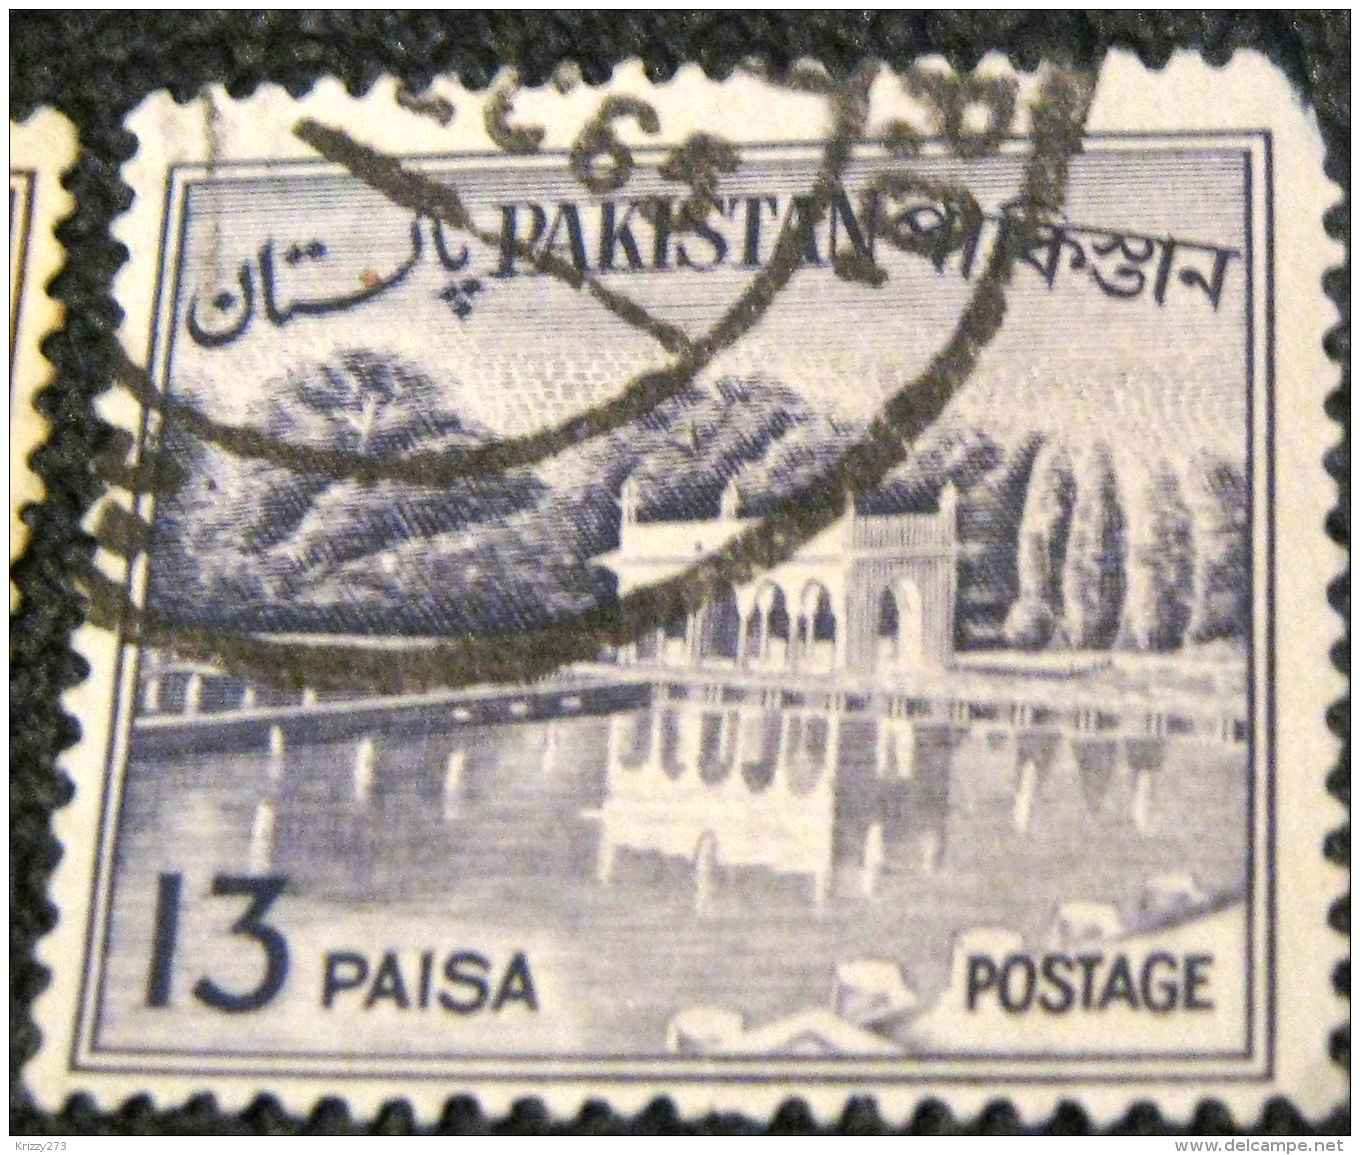 Pakistan 1961 Shalimar Gardens 13p - Used - Pakistan